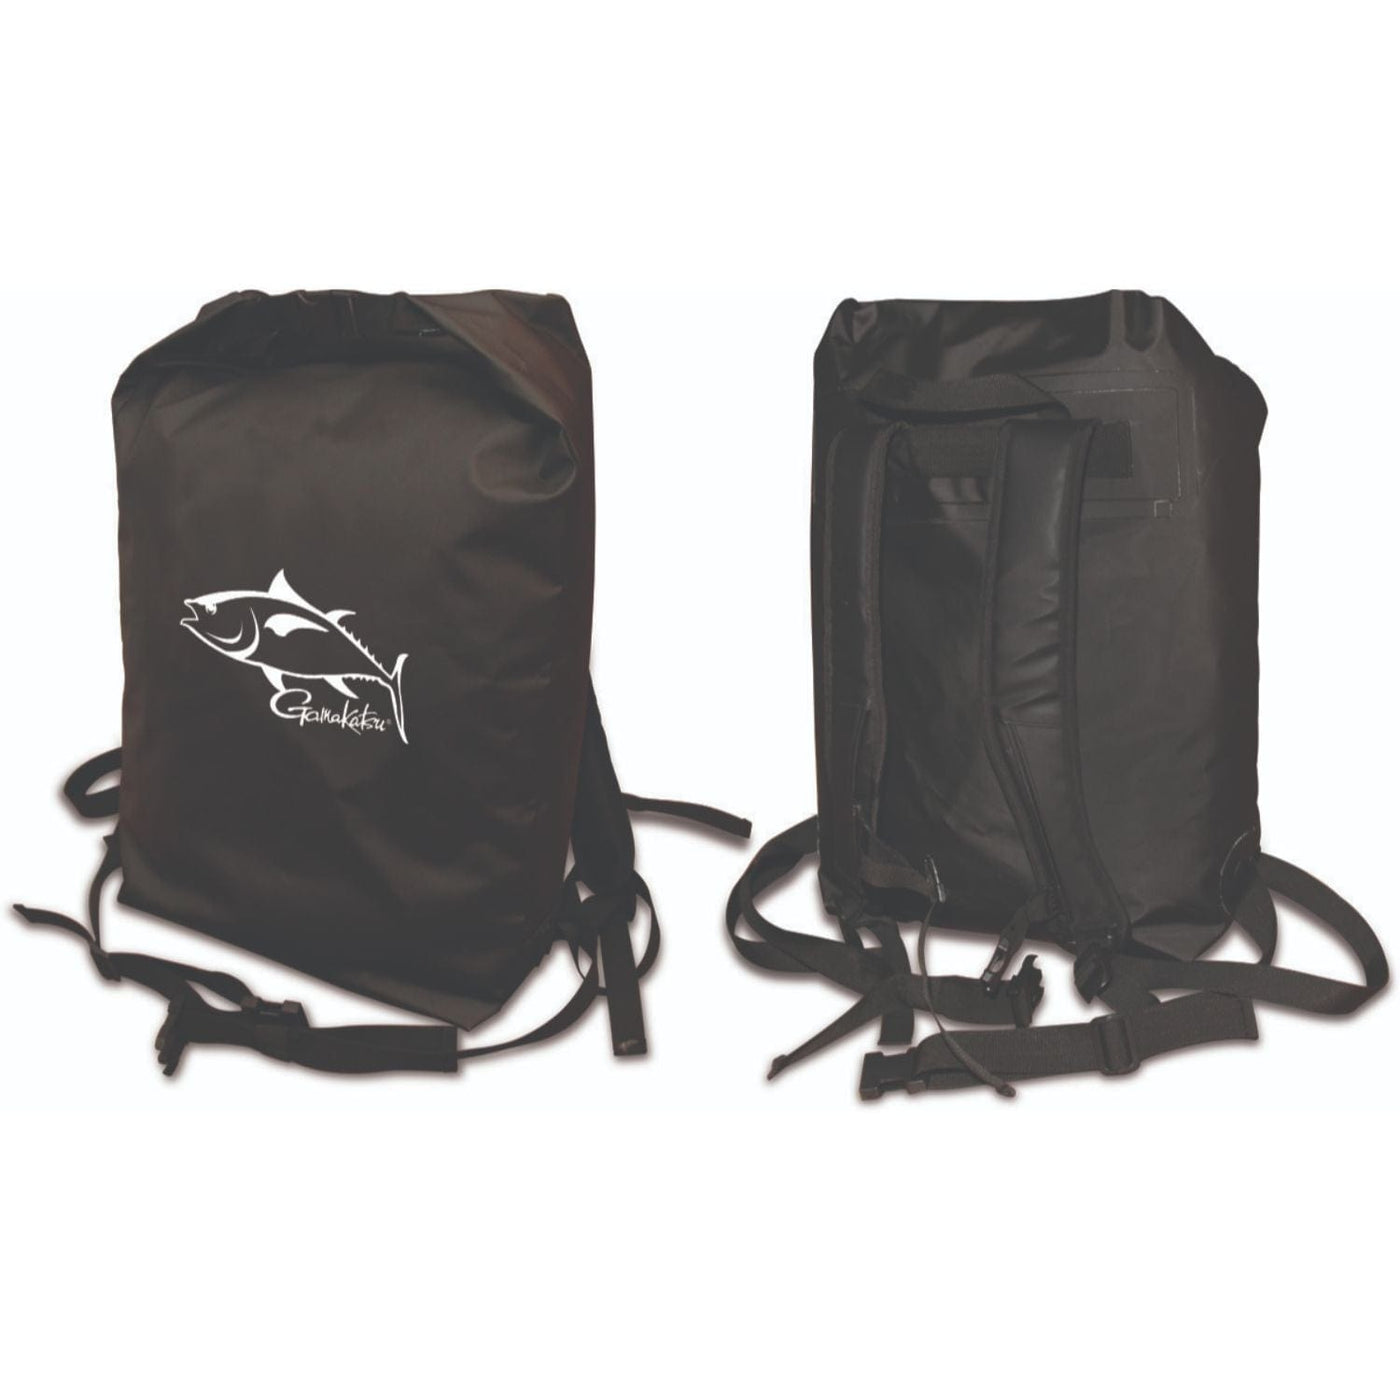 Gamakatsu Gamakatsu Waterproof Backpack-Tuna Camping And Outdoor